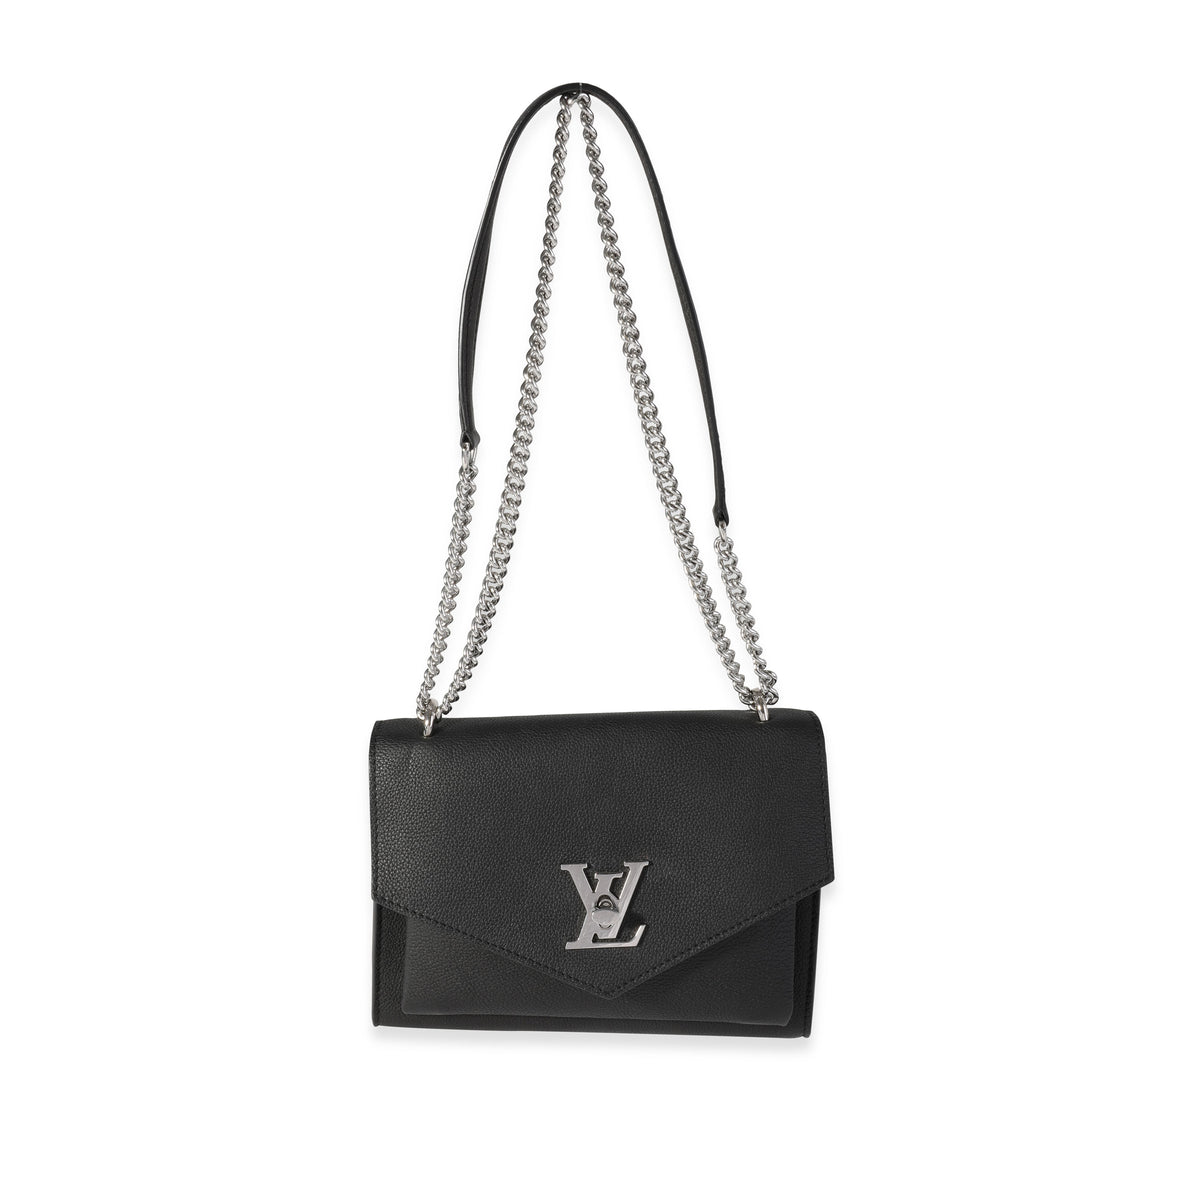 Louis Vuitton Backpack Lockme II Noir Black - GB